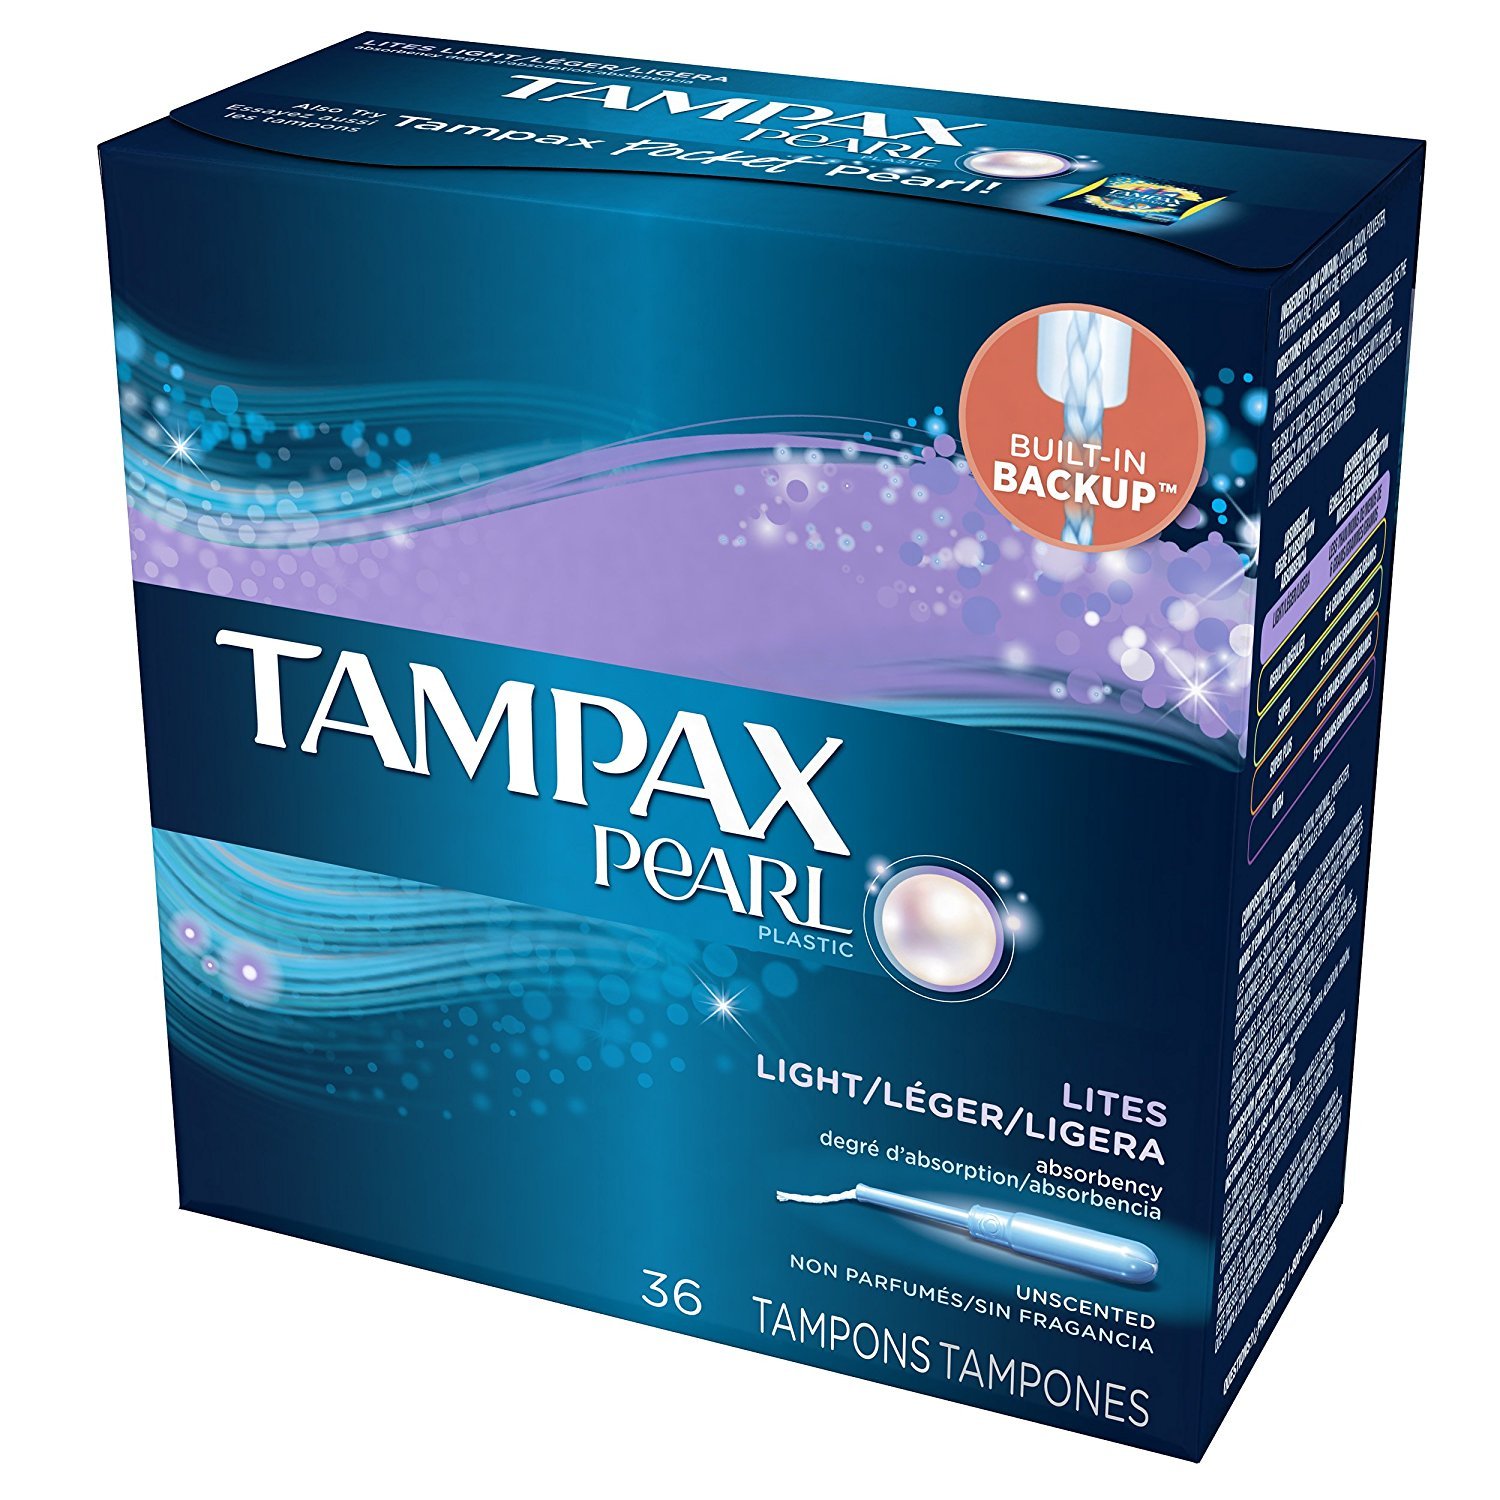 تامپکس (Tampax) محصولی از شرکت پراکتر اند گمبل (P&G)